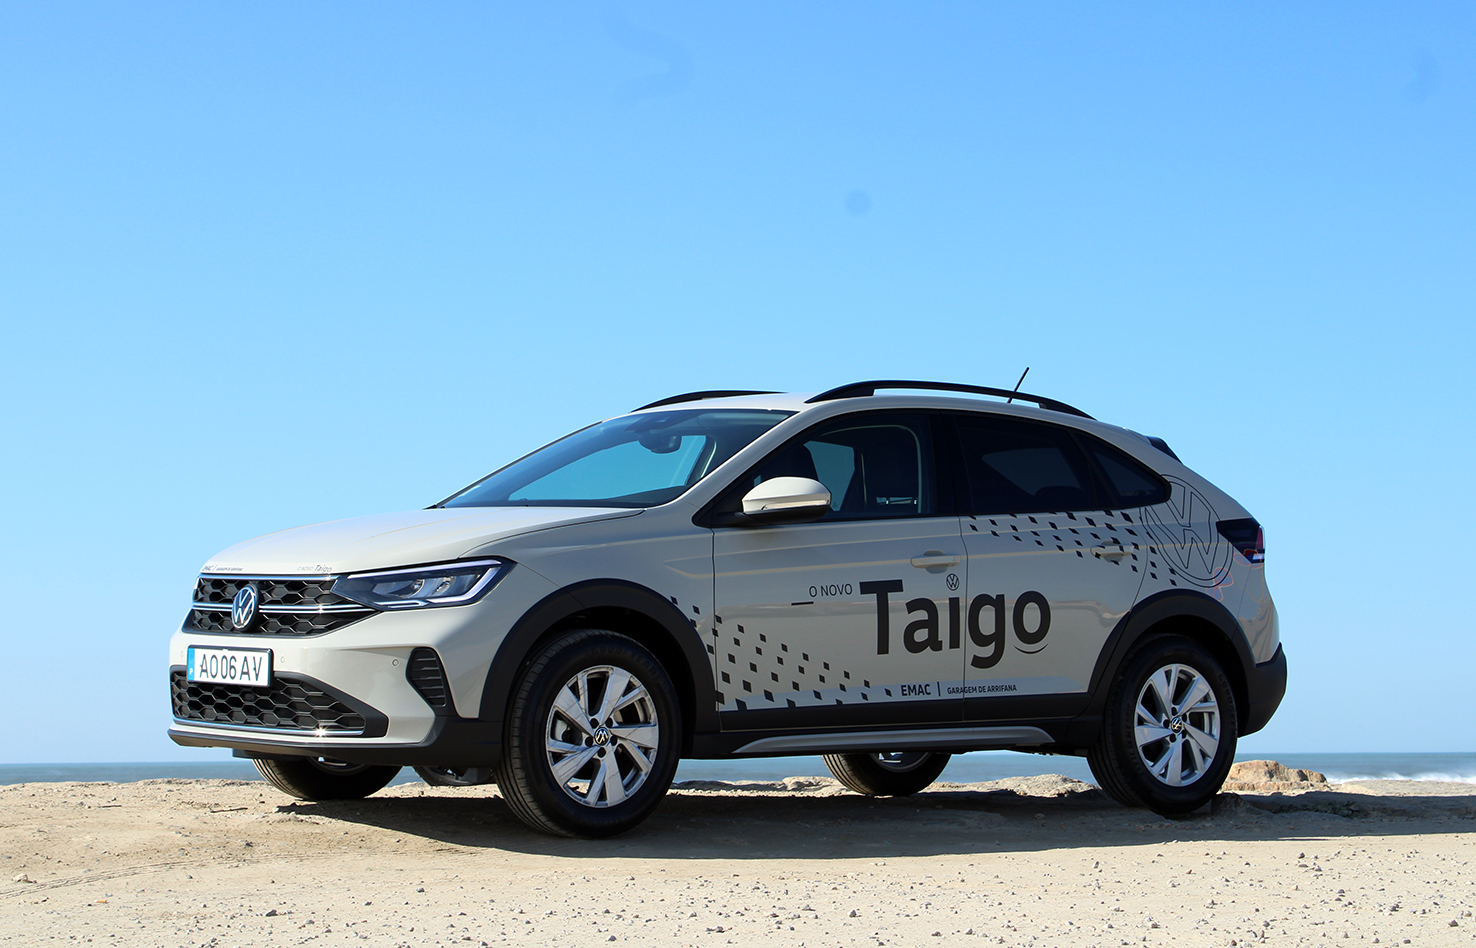 Novo Volkswagen Taigo chegou à EMAC | Garagem de Arrifana